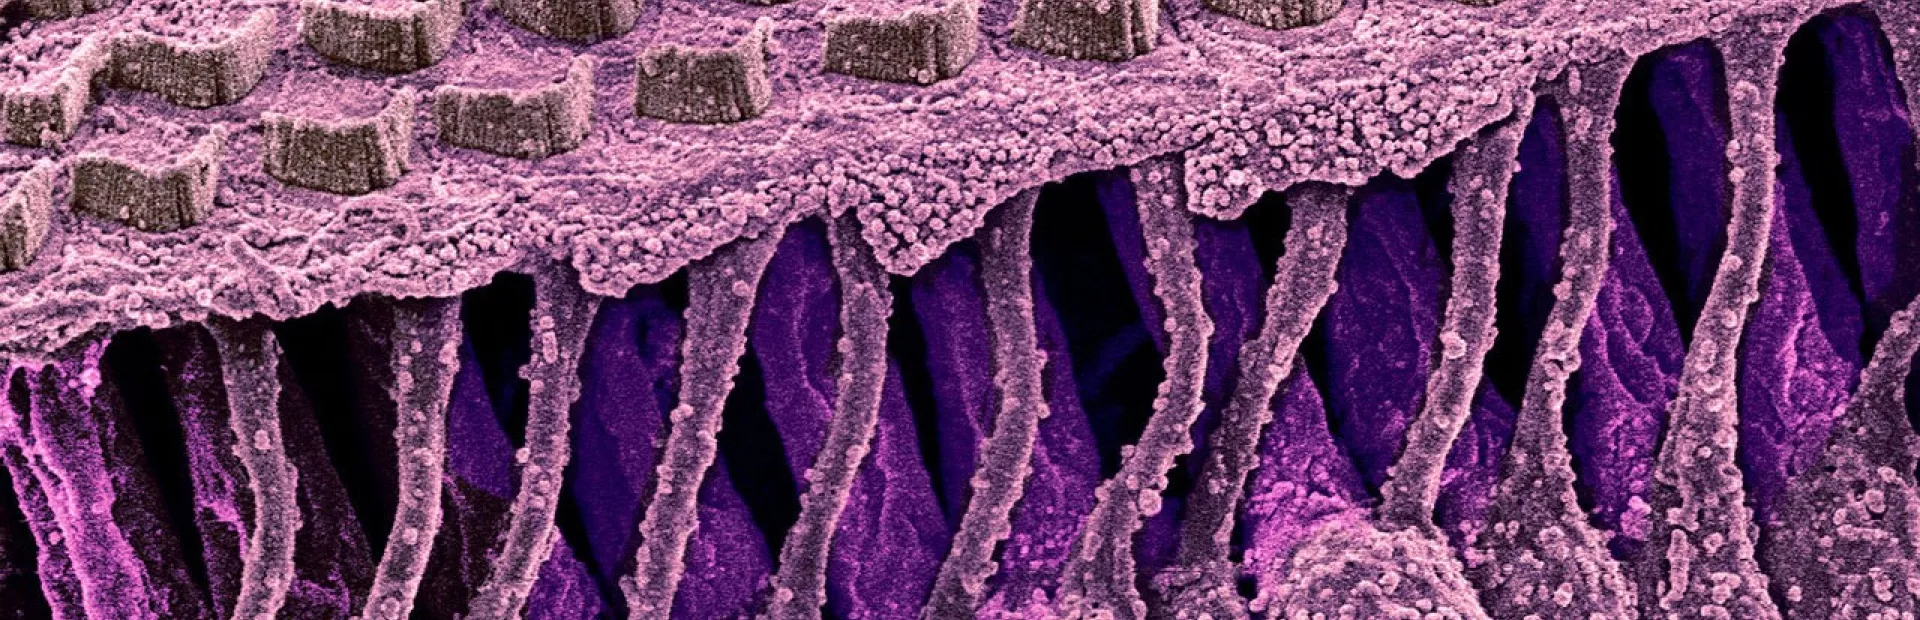 Hair cells